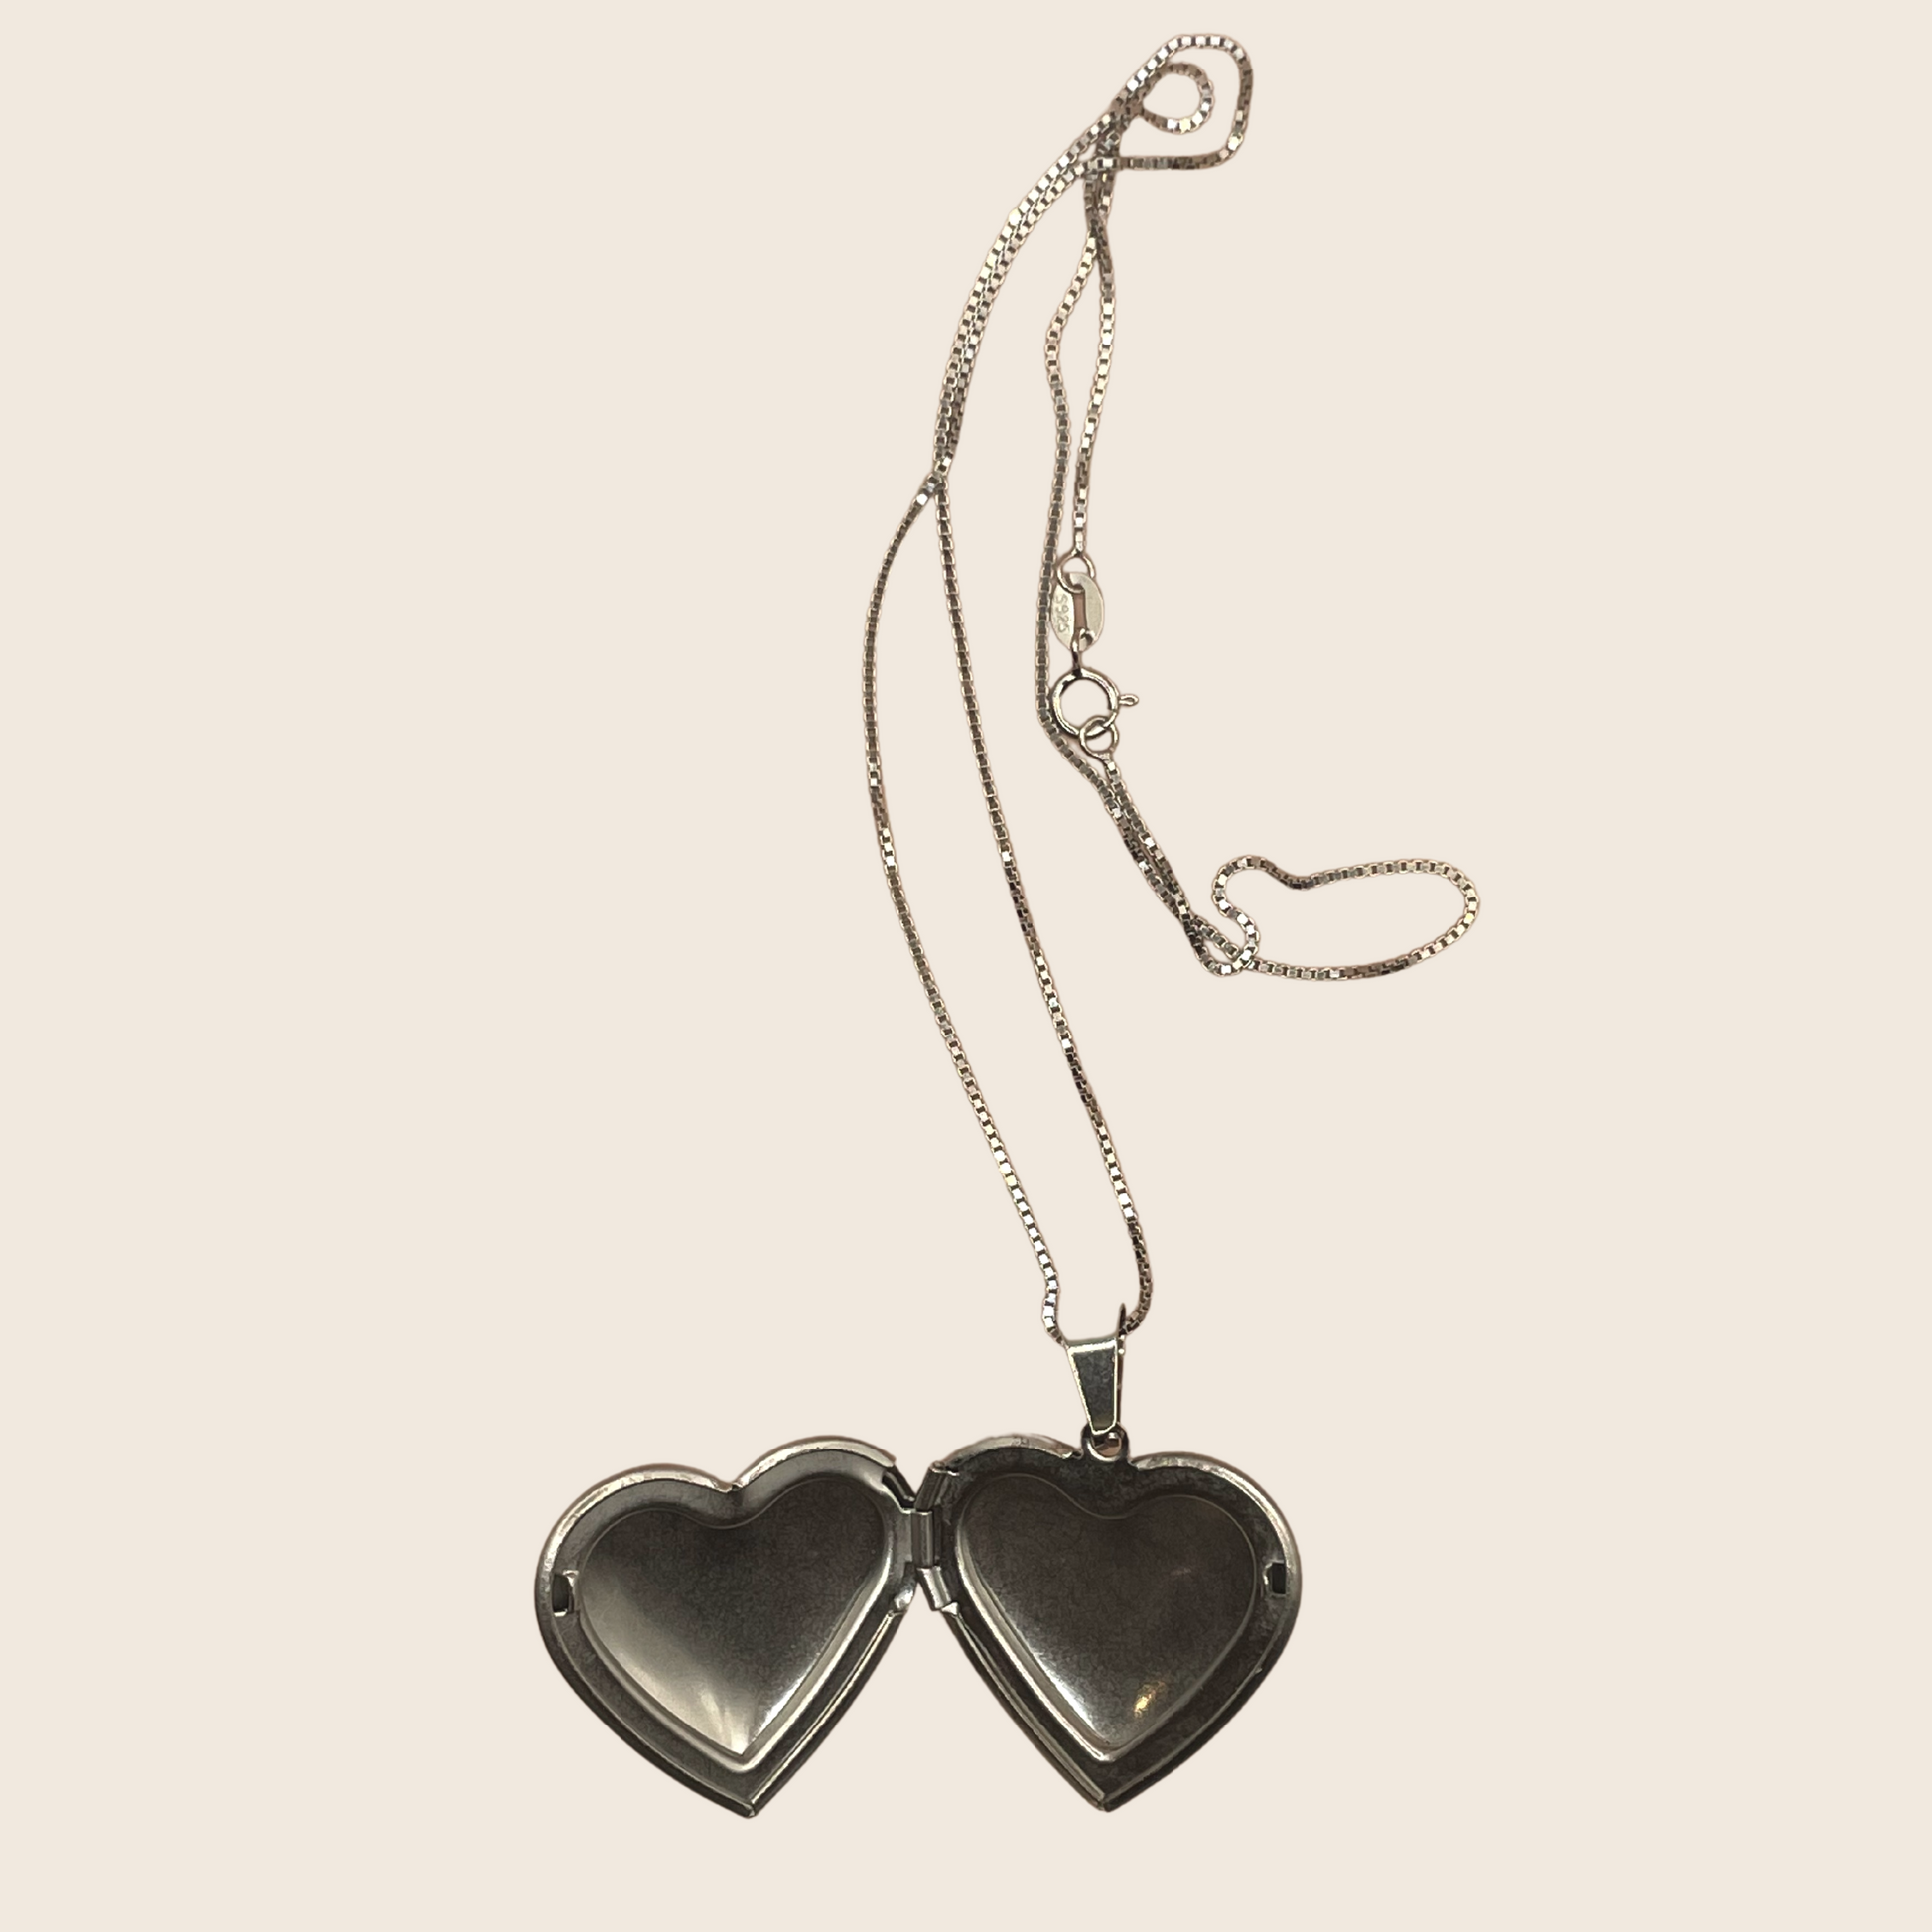 Heart Locket Necklace - Lemon Lua Heart Locket Necklace Lemon Lua Lemon Lua Heart Locket Necklace Heart Locket Necklace